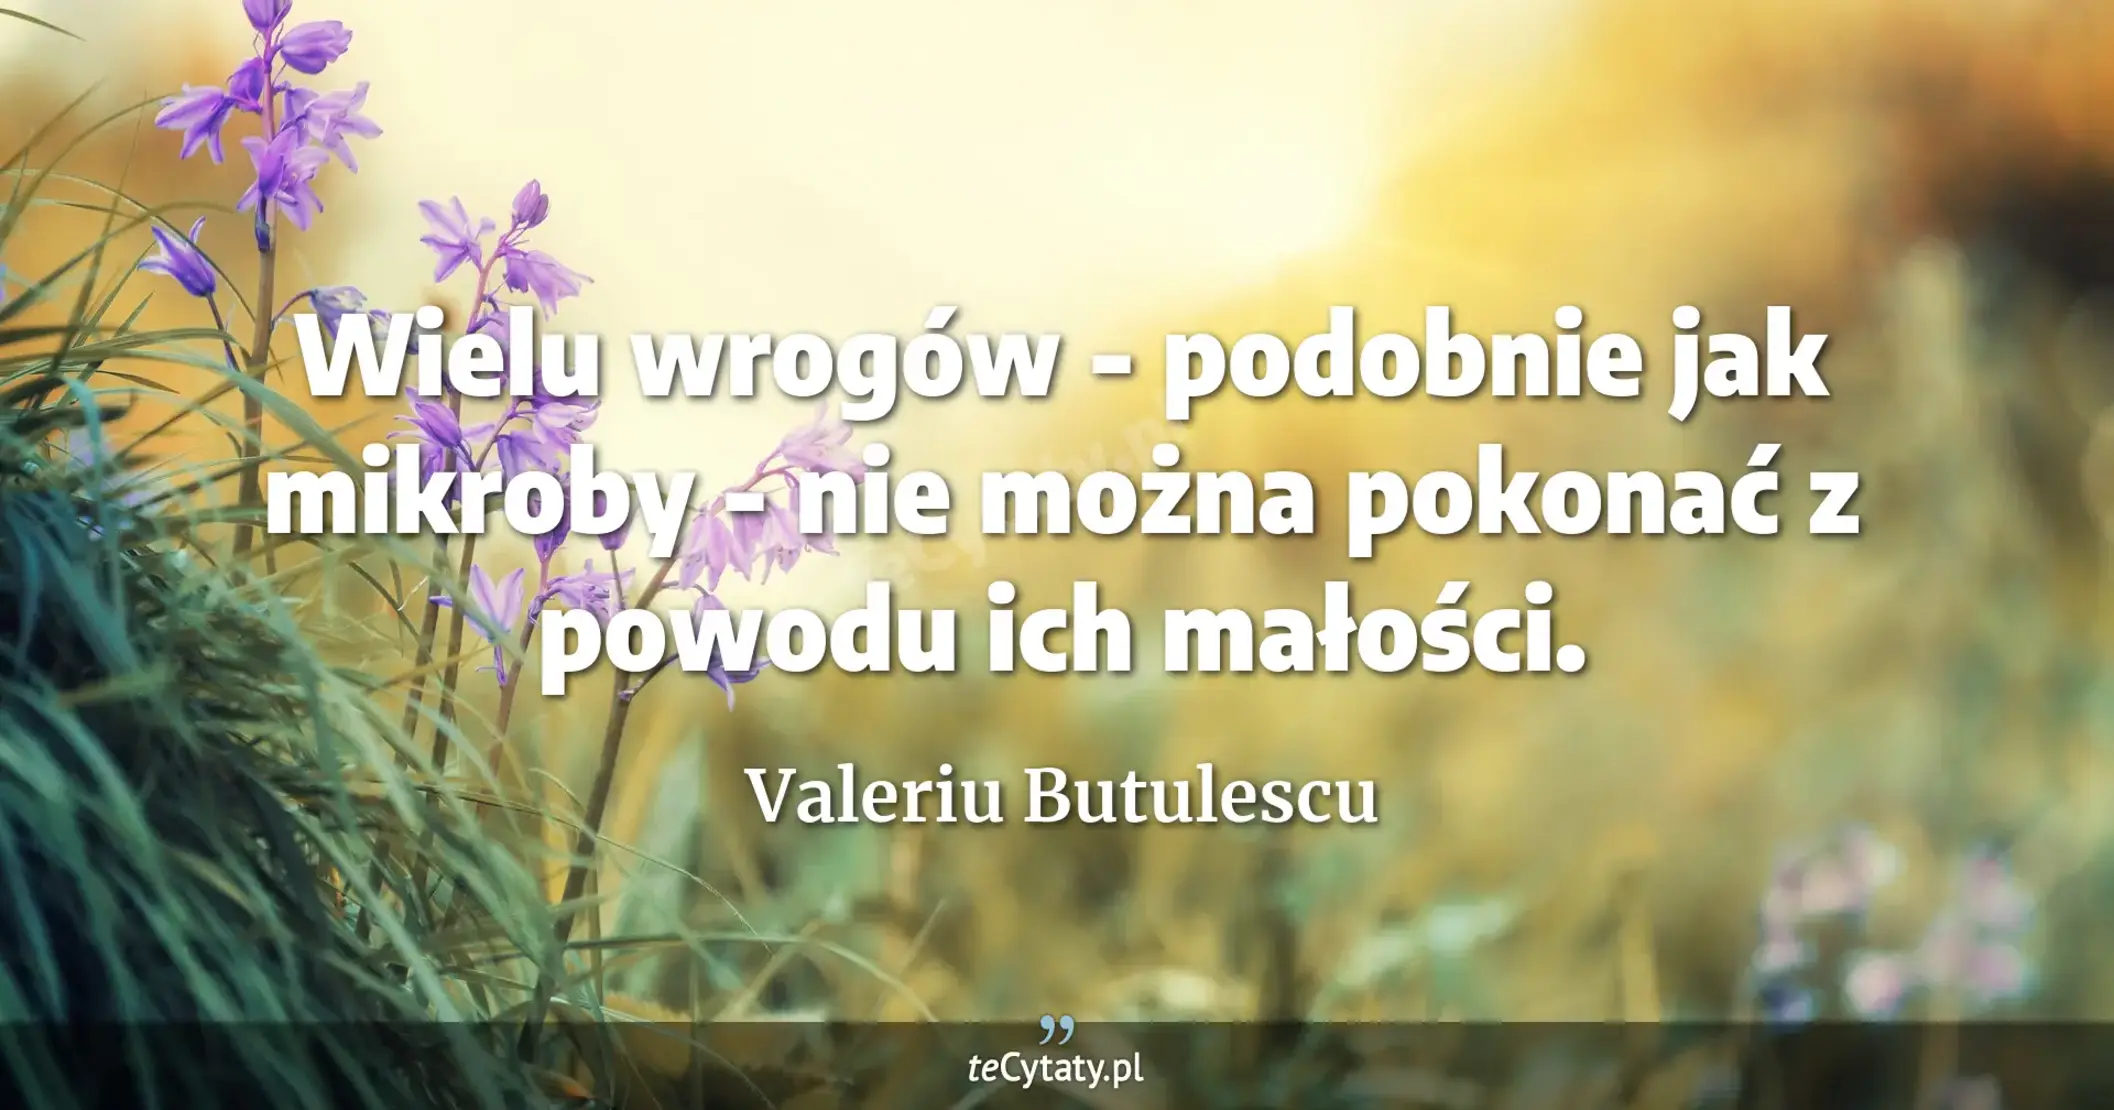 Wielu wrogów - podobnie jak mikroby - nie można pokonać z powodu ich małości. - Valeriu Butulescu